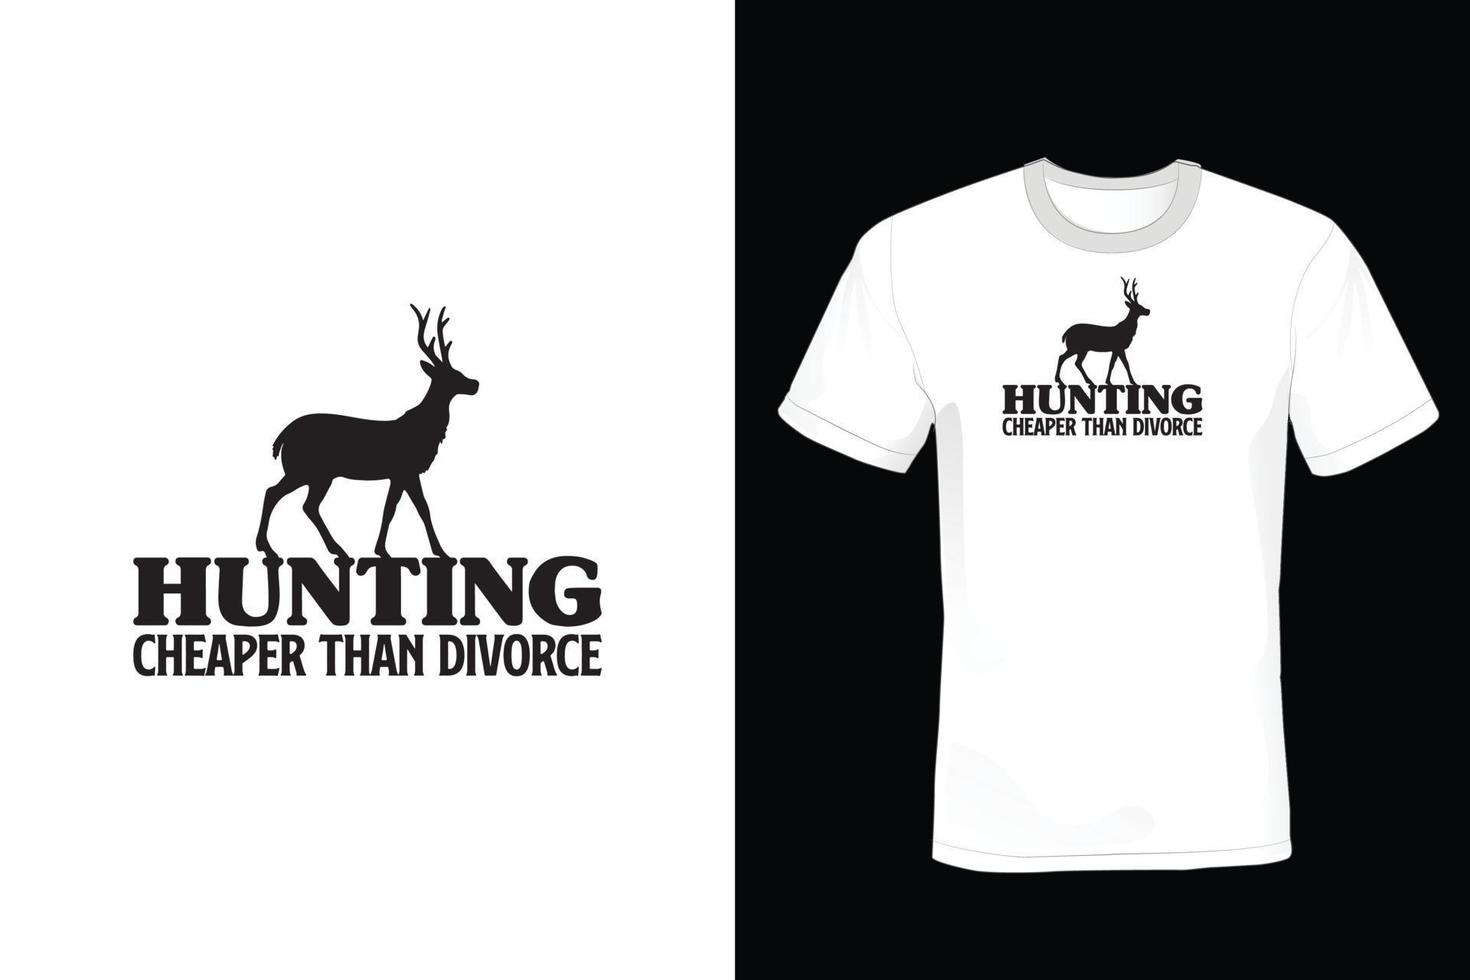 design della maglietta da caccia, vintage, tipografia vettore